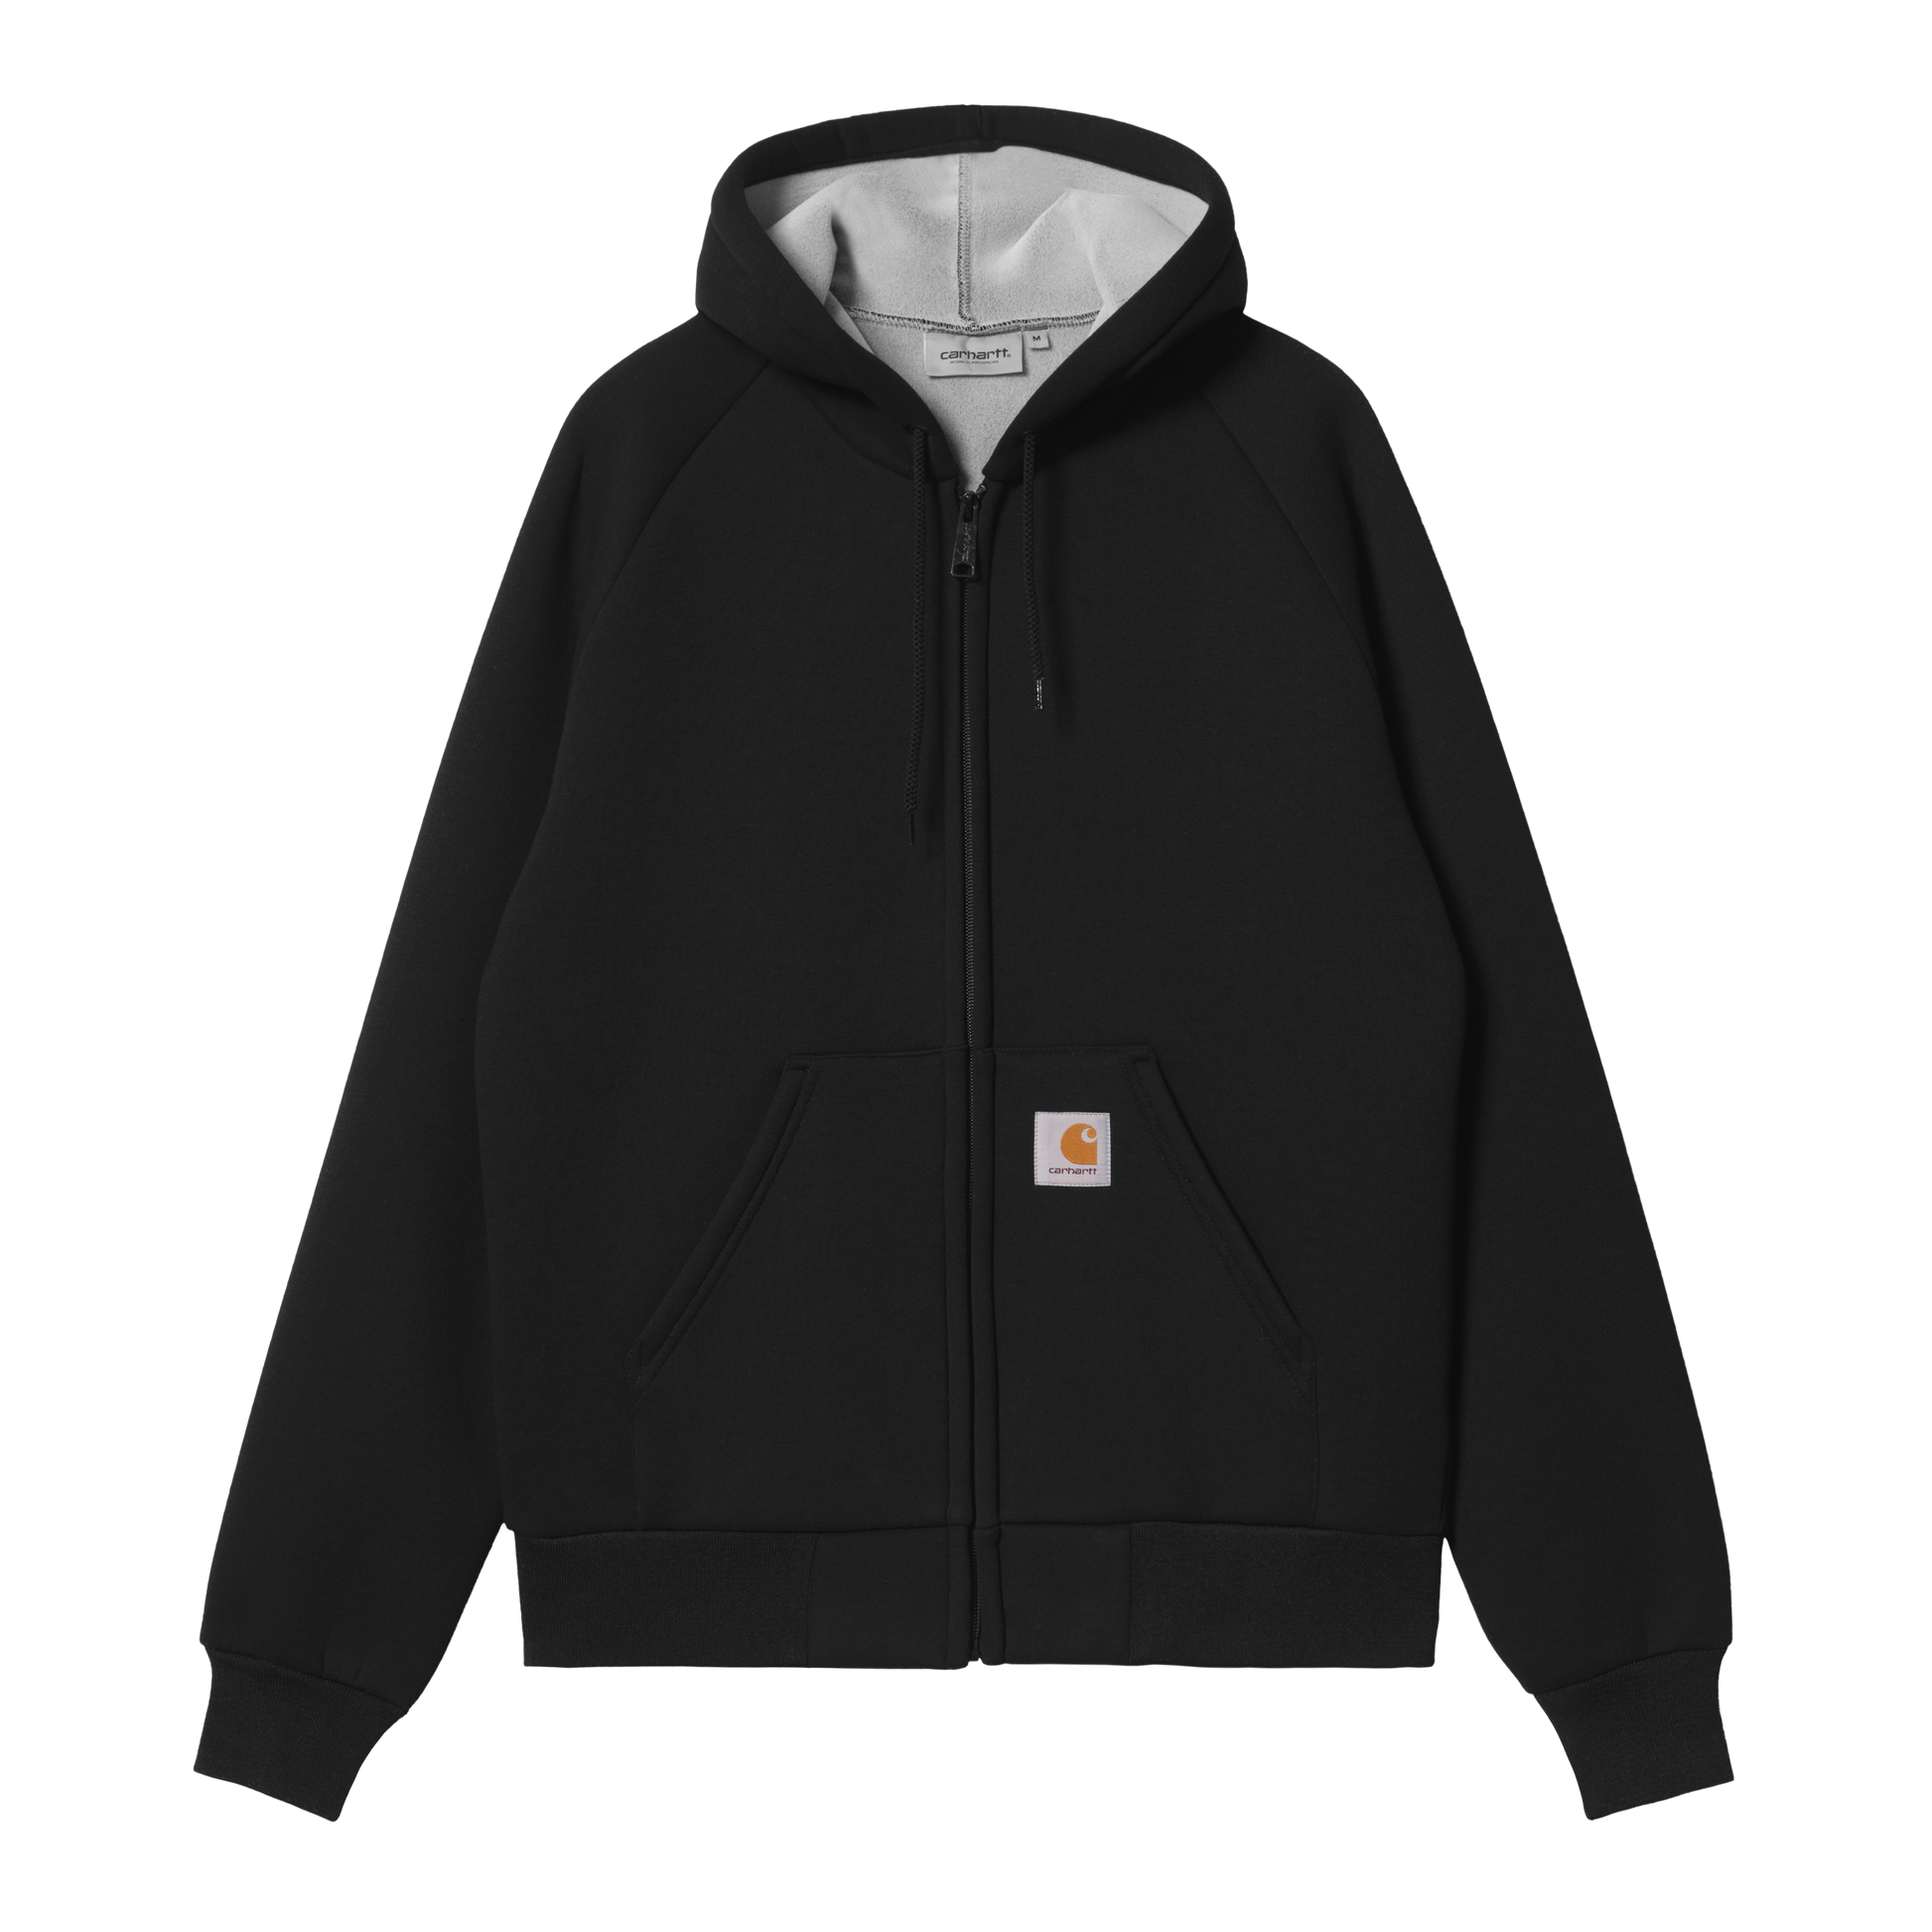 Carhartt WIP Car-Lux Hooded Jacket Black/Grey. Foto de frente.